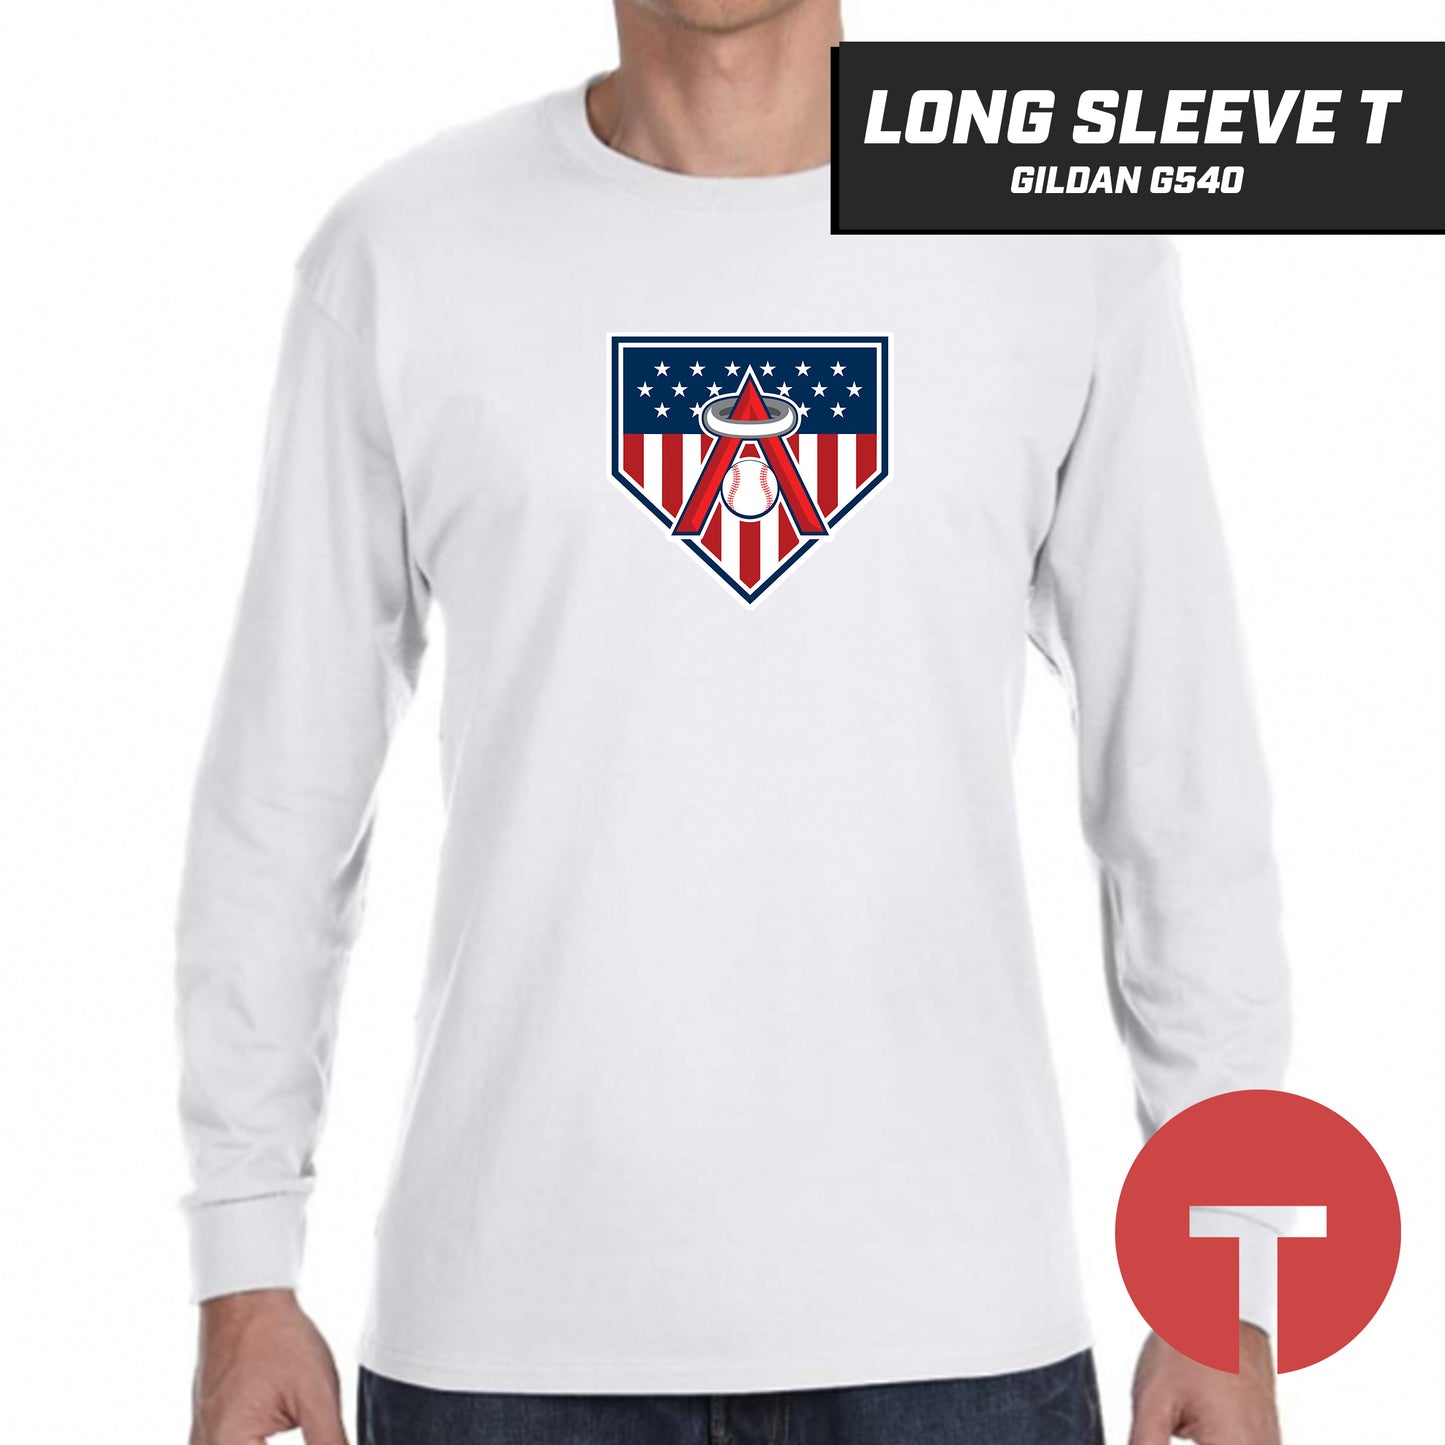 East Cobb Angels - LOGO 2 - Long-Sleeve T-Shirt Gildan G540